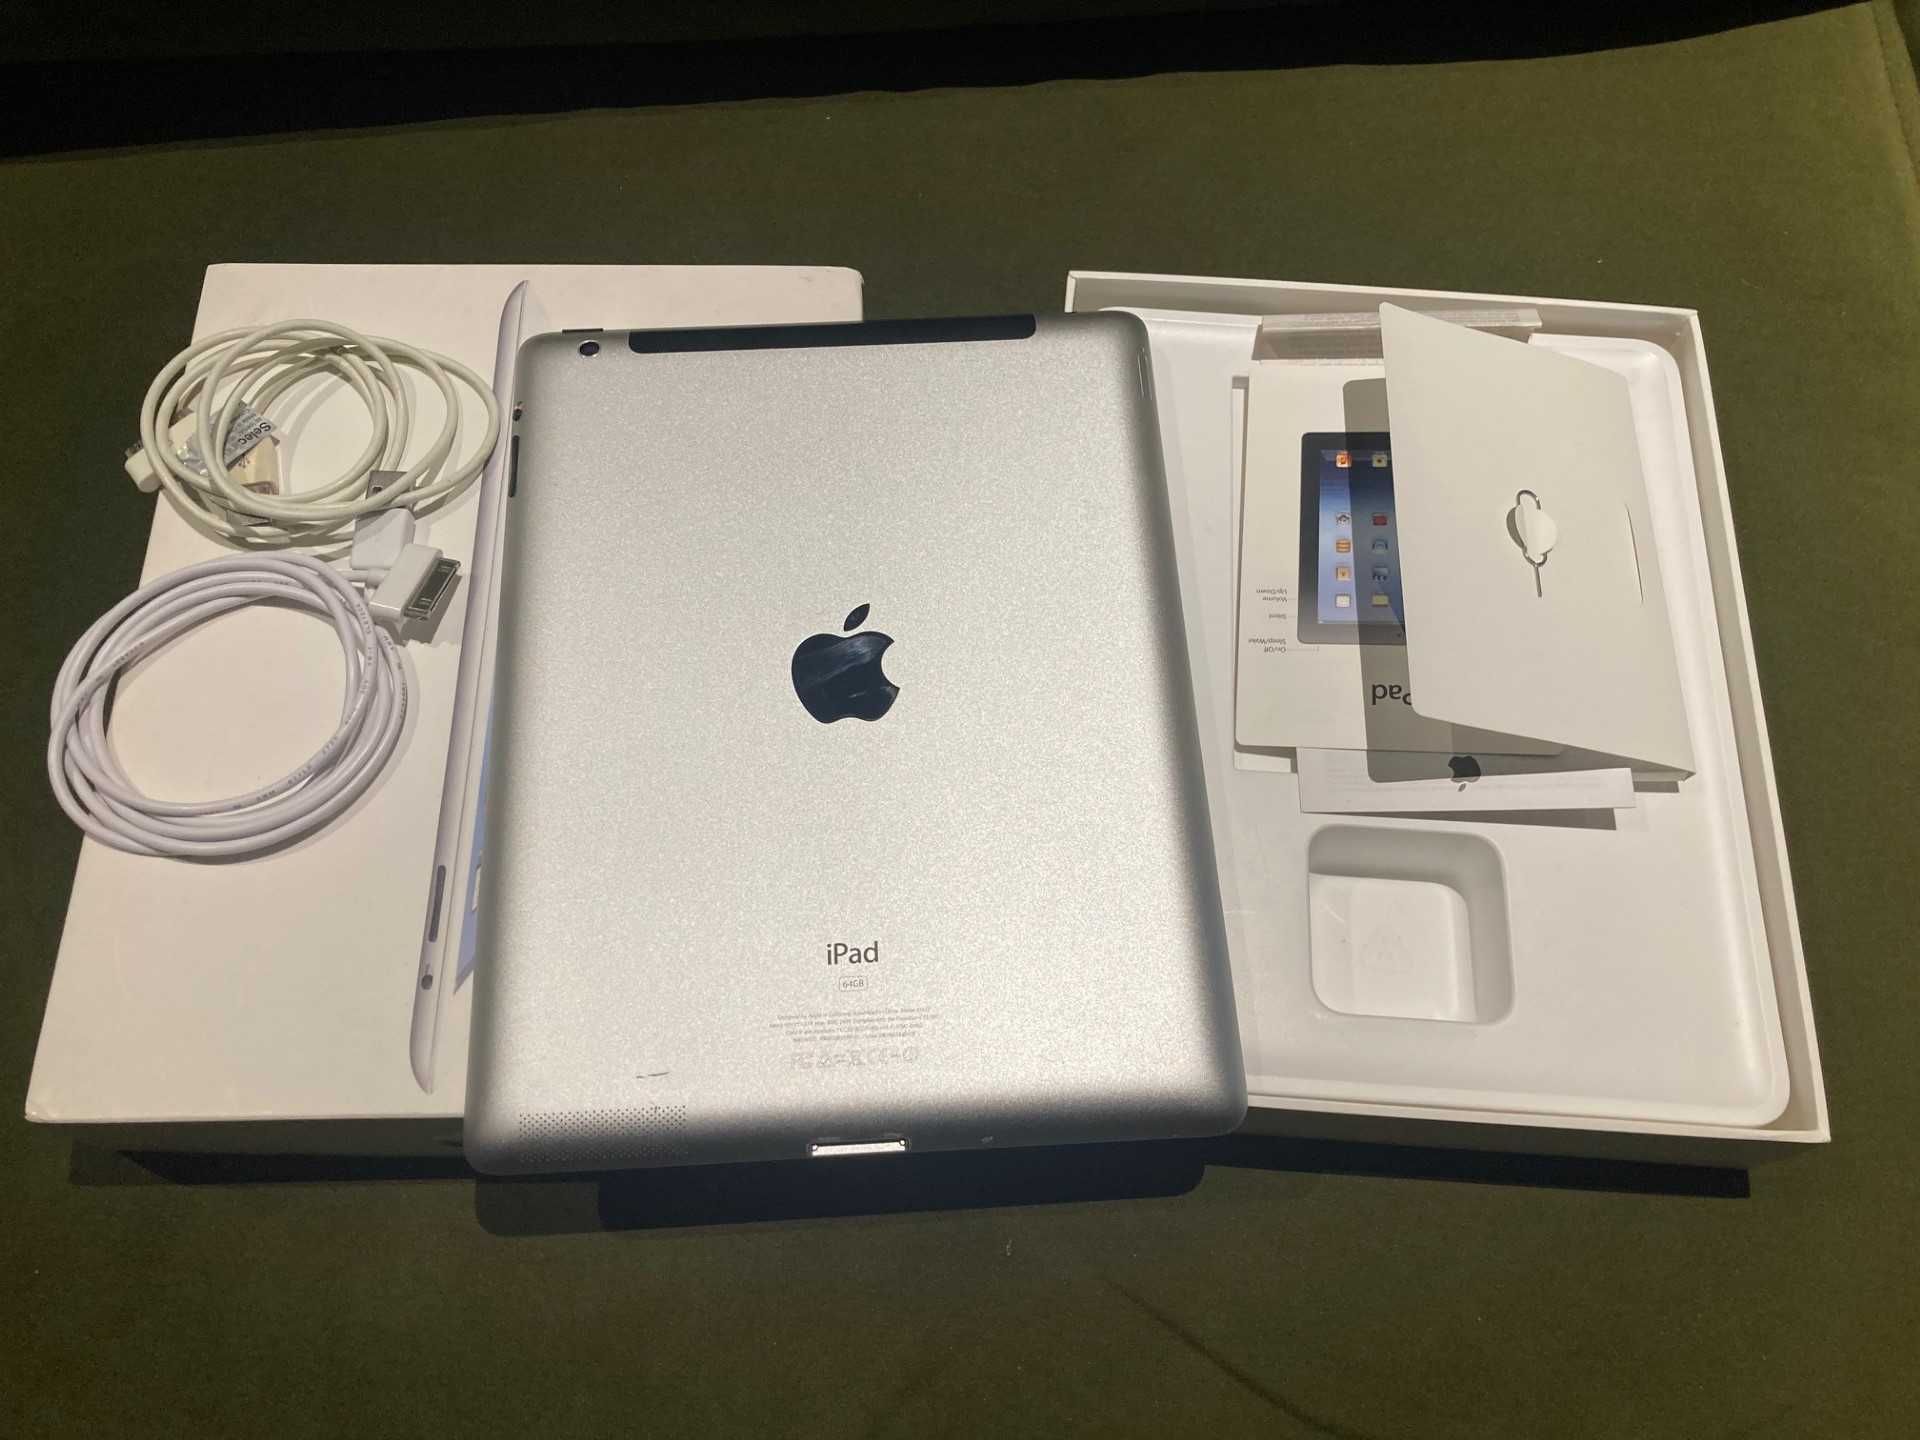 Apple iPad 3 WLAN + LTE (A1430) 64GB biały. W bardzo dobrym stanie.